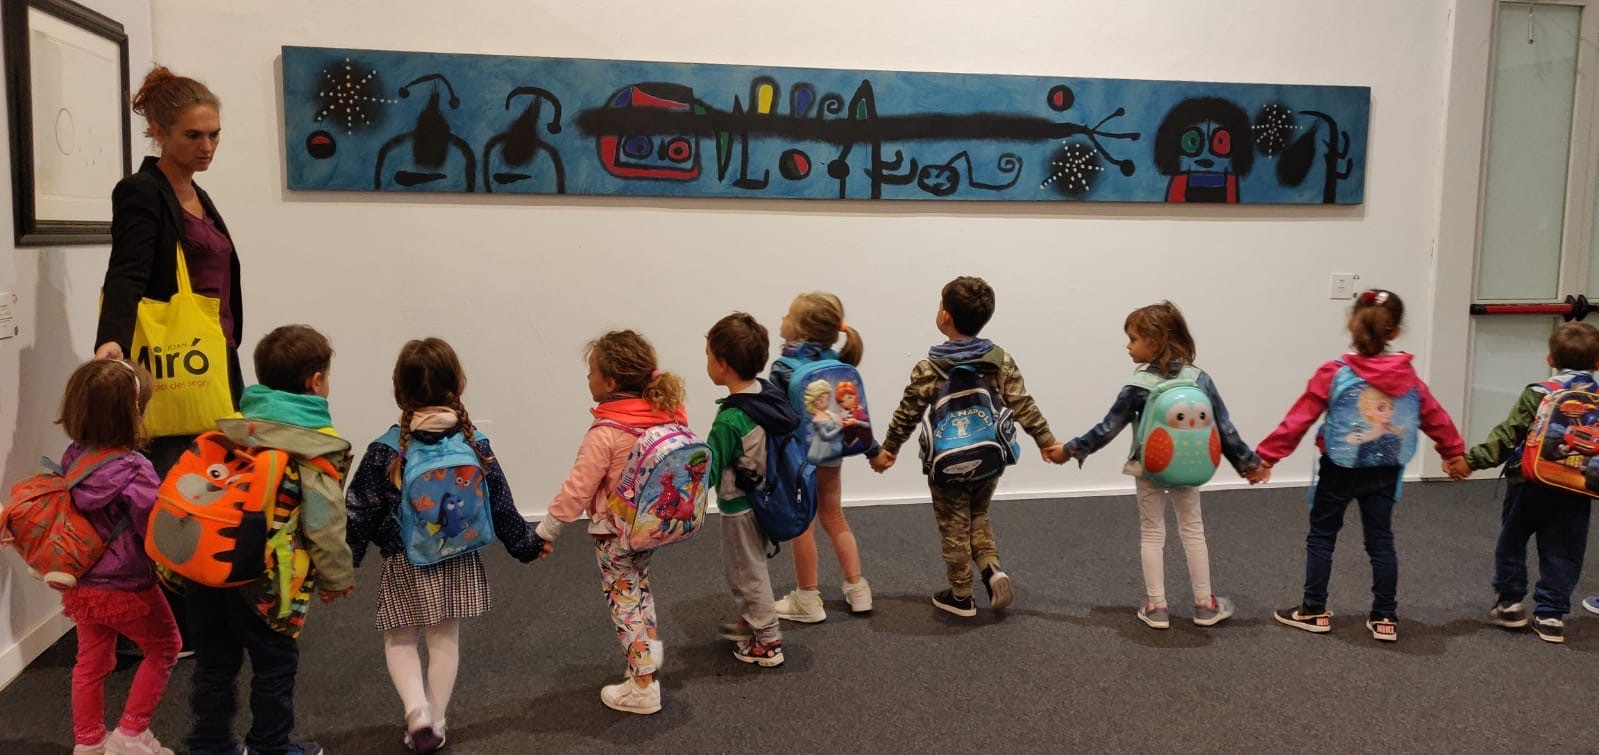 Ultimi giorni per visitare la mostra di Miró che saluta Napoli con 50.000 visitatori e 7.000 bambini ai laboratori didattici